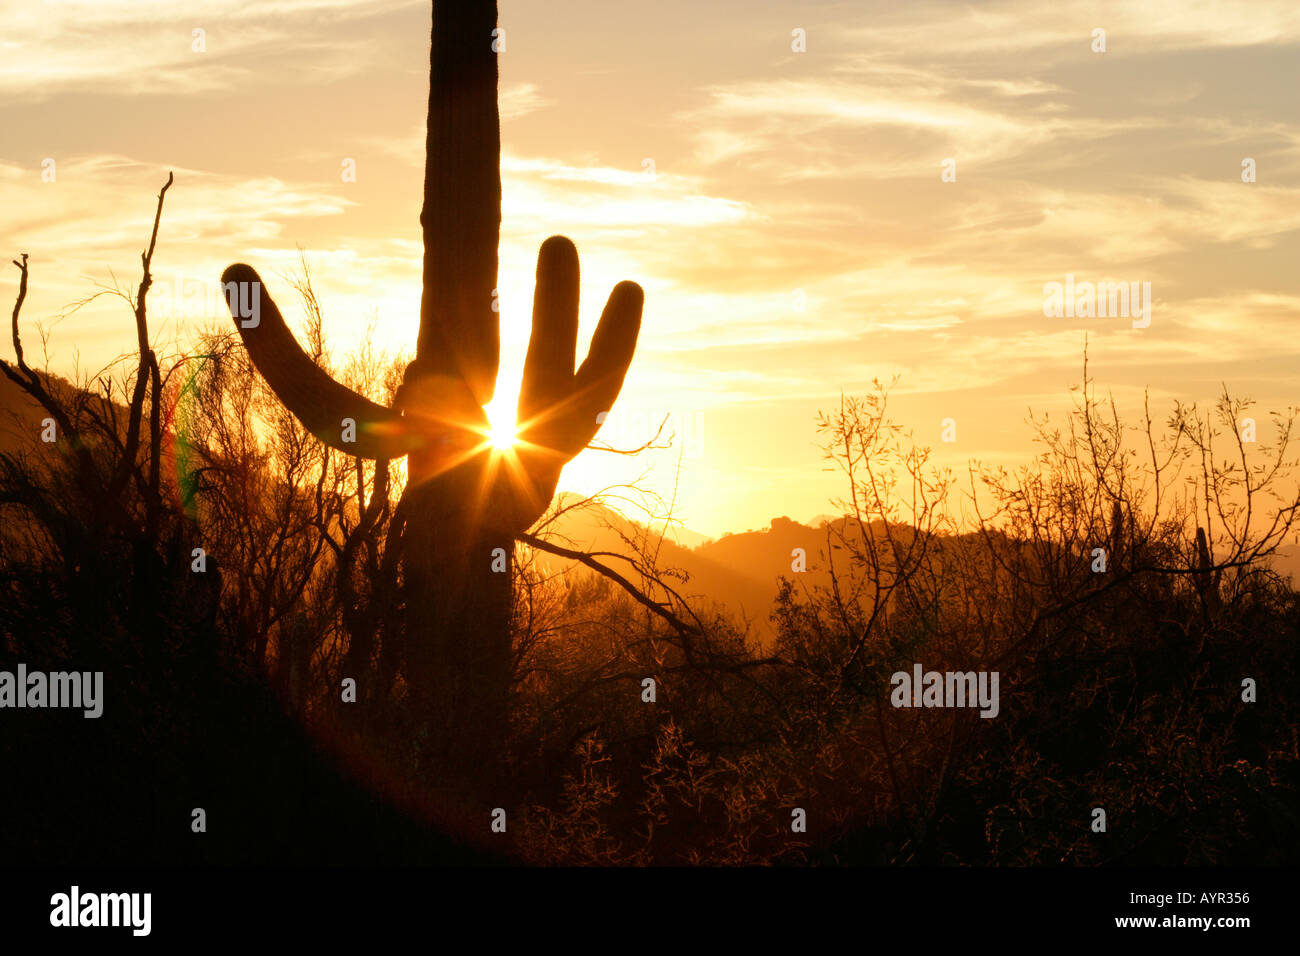 Ein Saguaro-Kaktus im südlichen Arizona s Sonoran Wüste Hintergrundbeleuchtung von der untergehenden Sonne Stockfoto